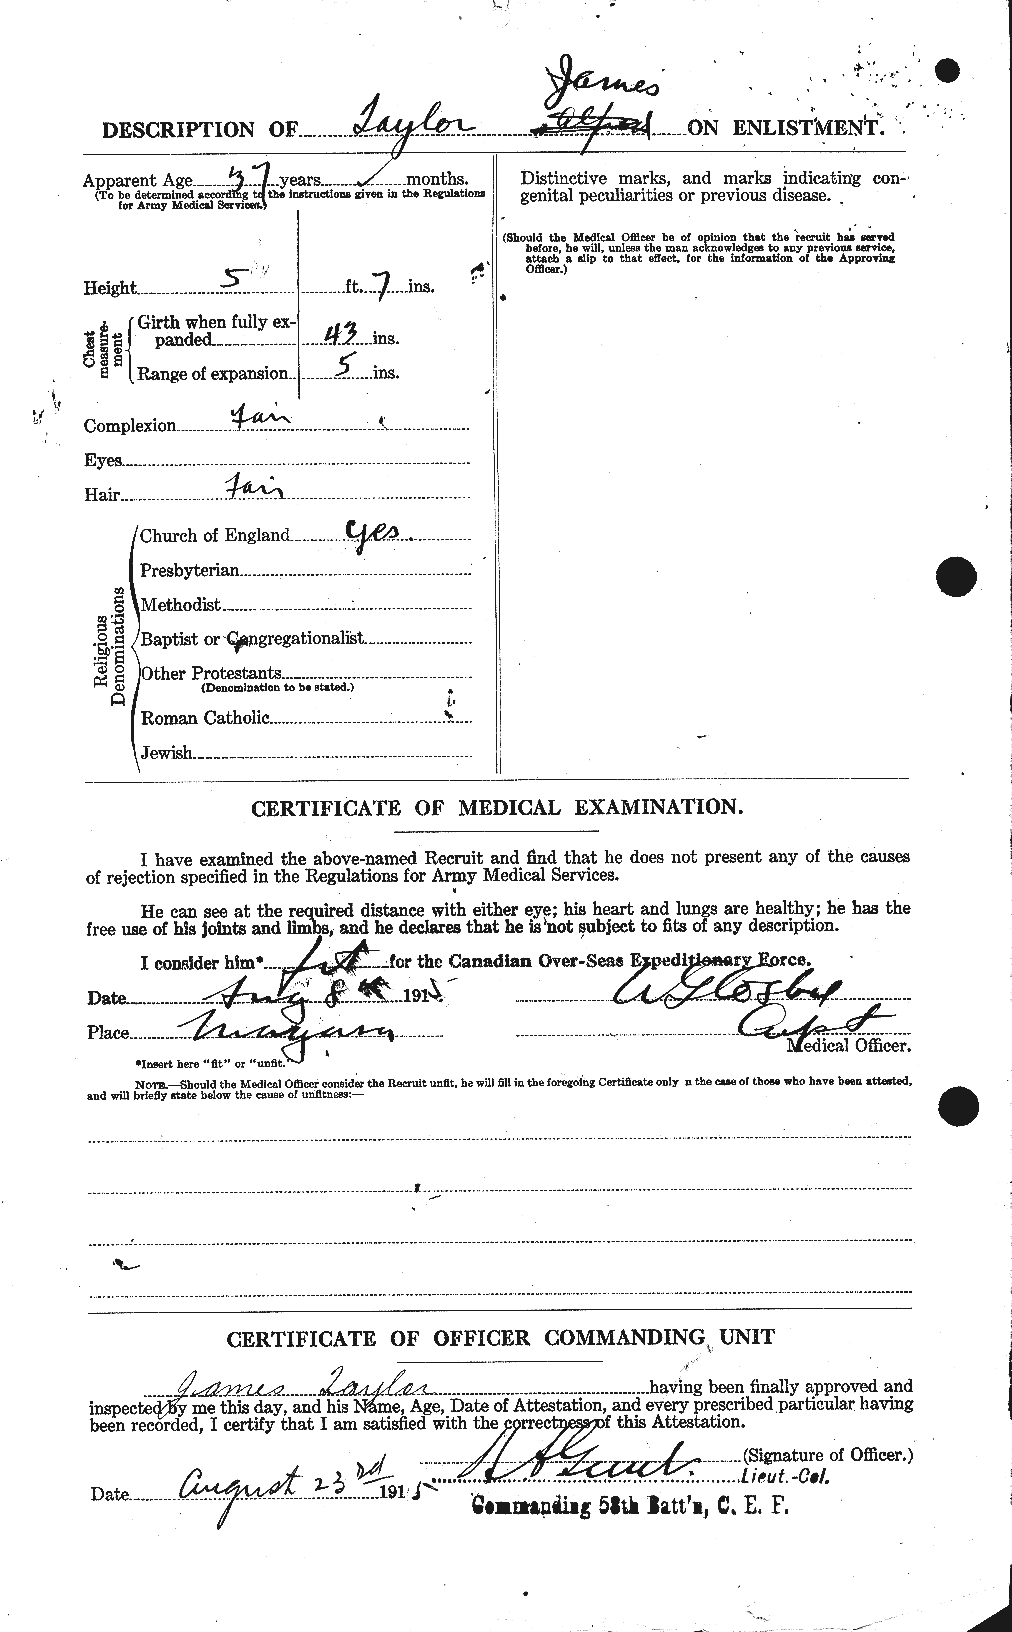 Dossiers du Personnel de la Première Guerre mondiale - CEC 626686b